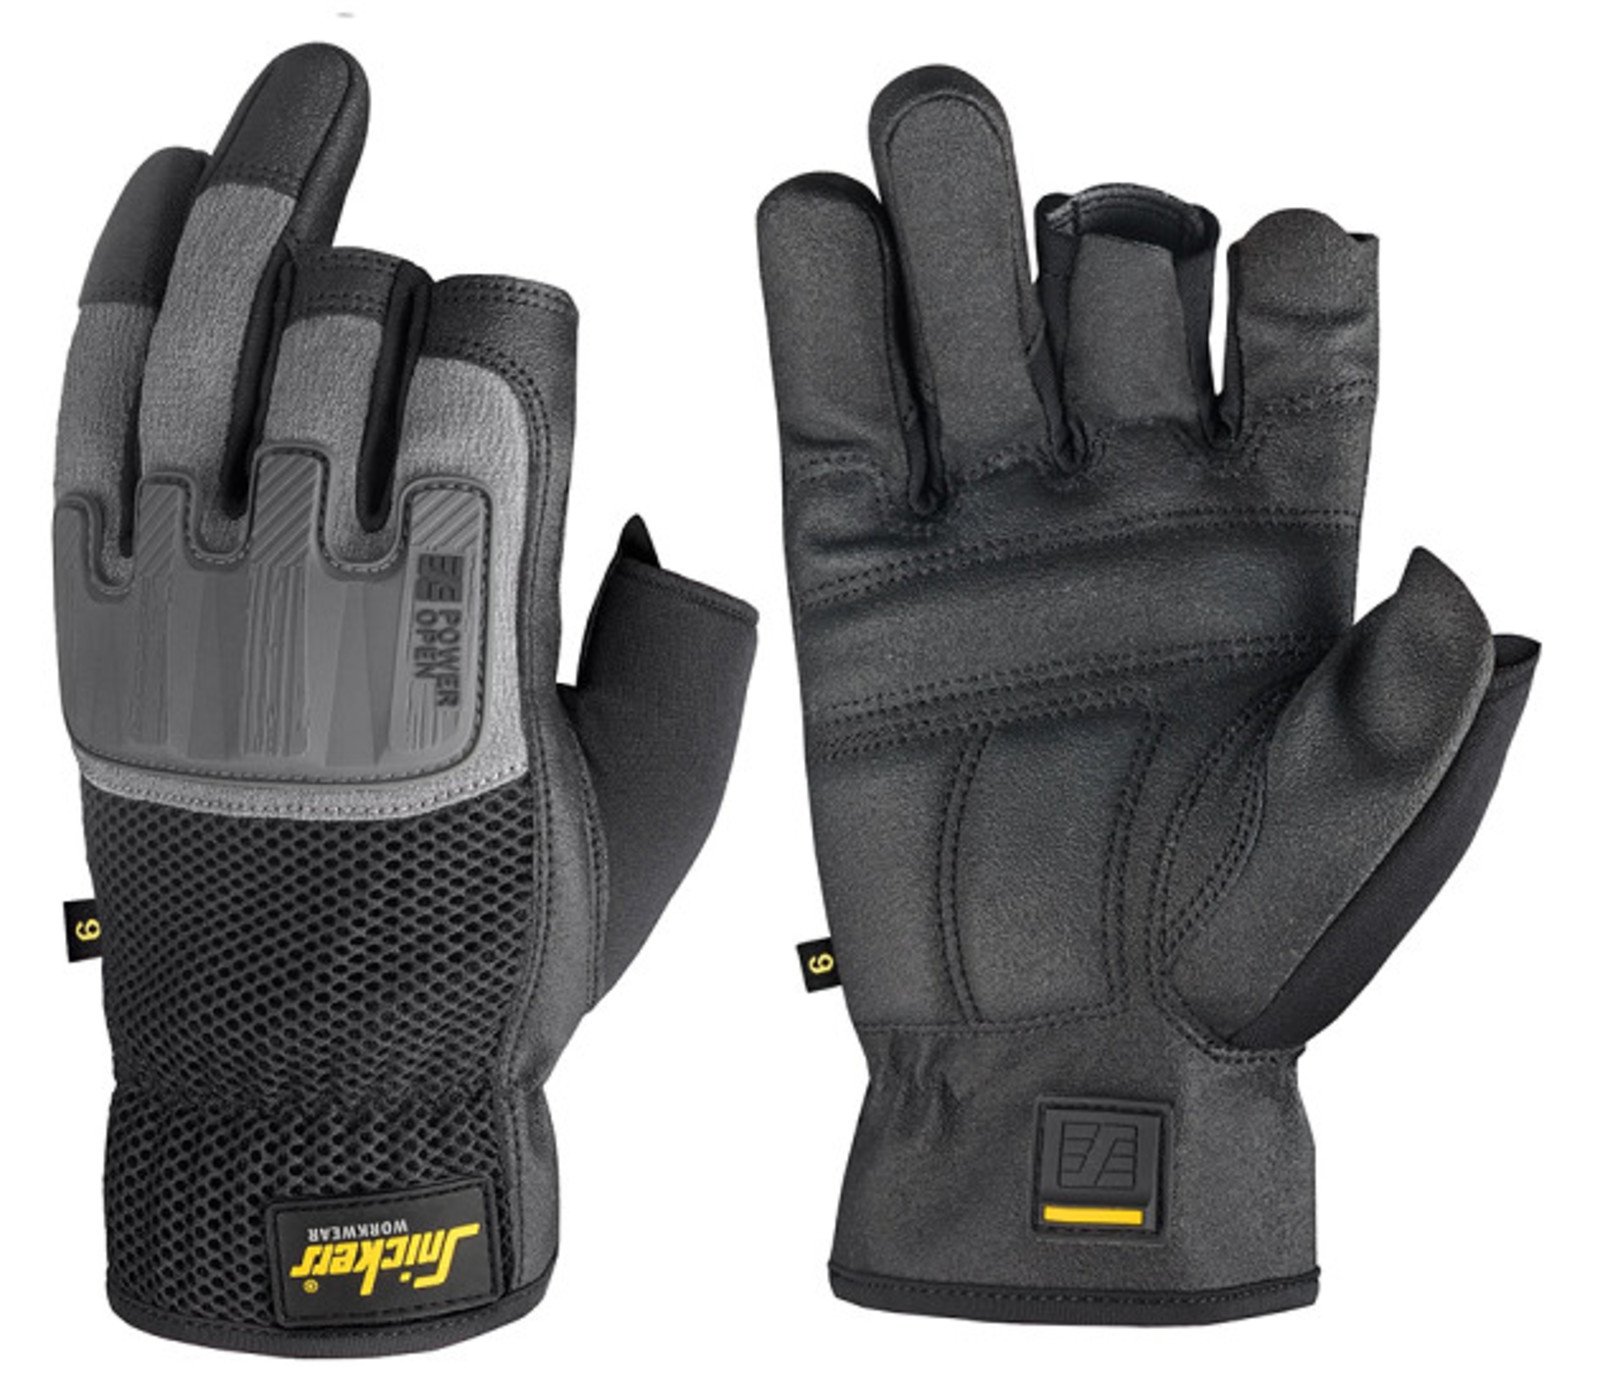 Ochranné rukavice Snickers® Power Open bez prstov - veľkosť: 11/XXL, farba: sivá/čierna